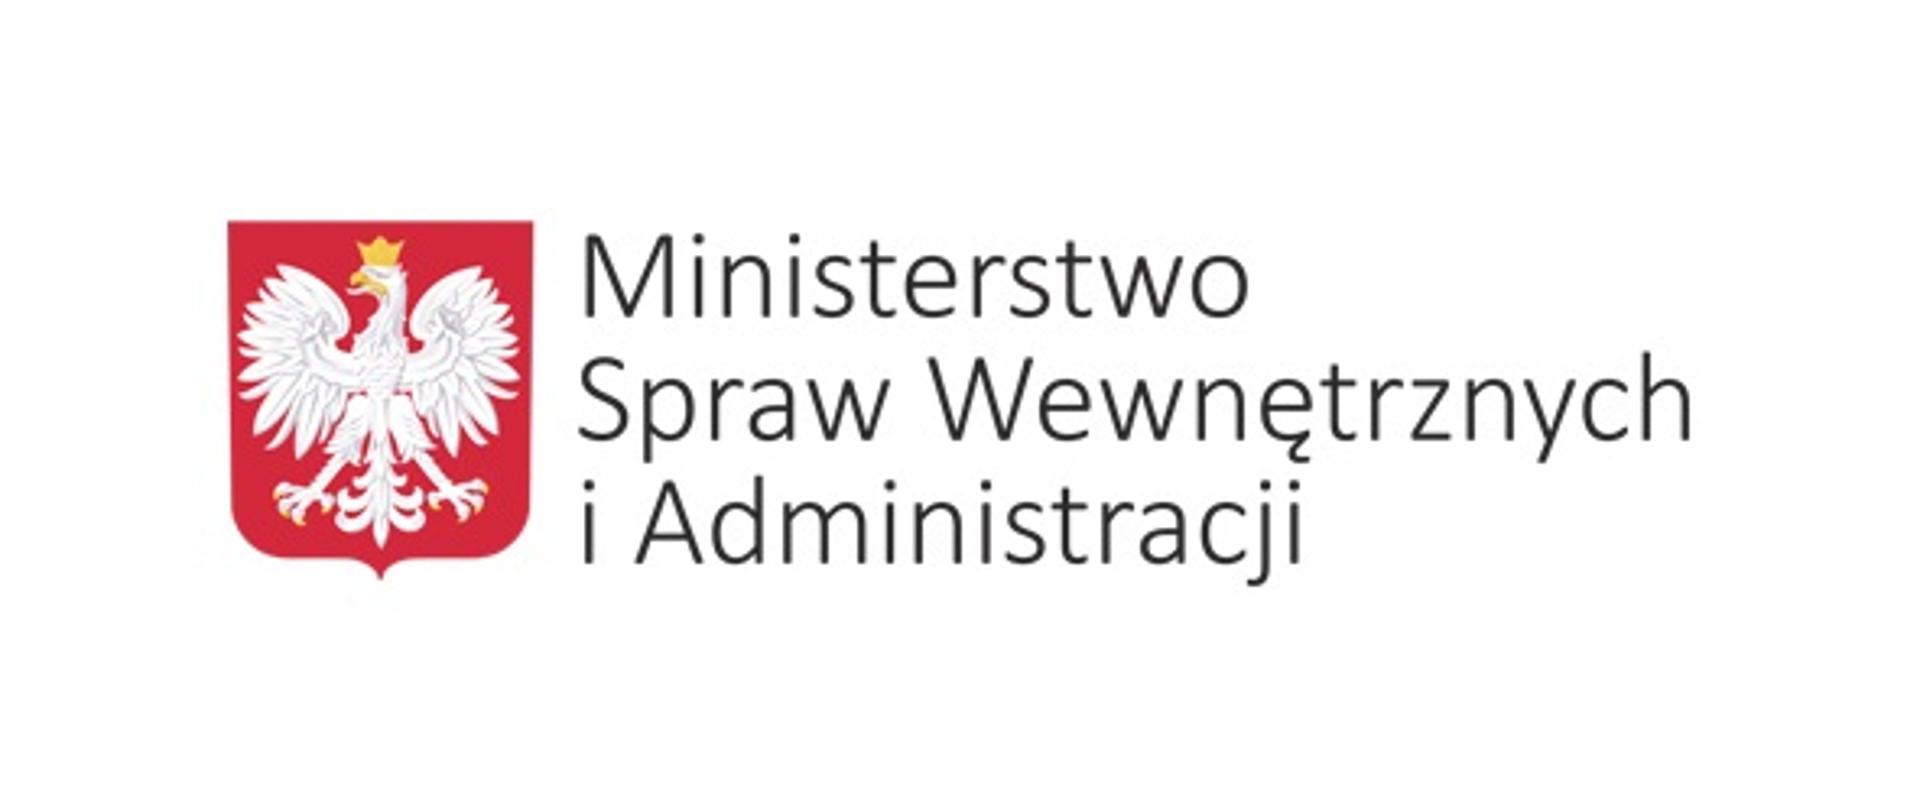 Na ilustracji znajduje się godło Polski oraz napis Ministerstwo Spraw Wewnętrznych i Administracji